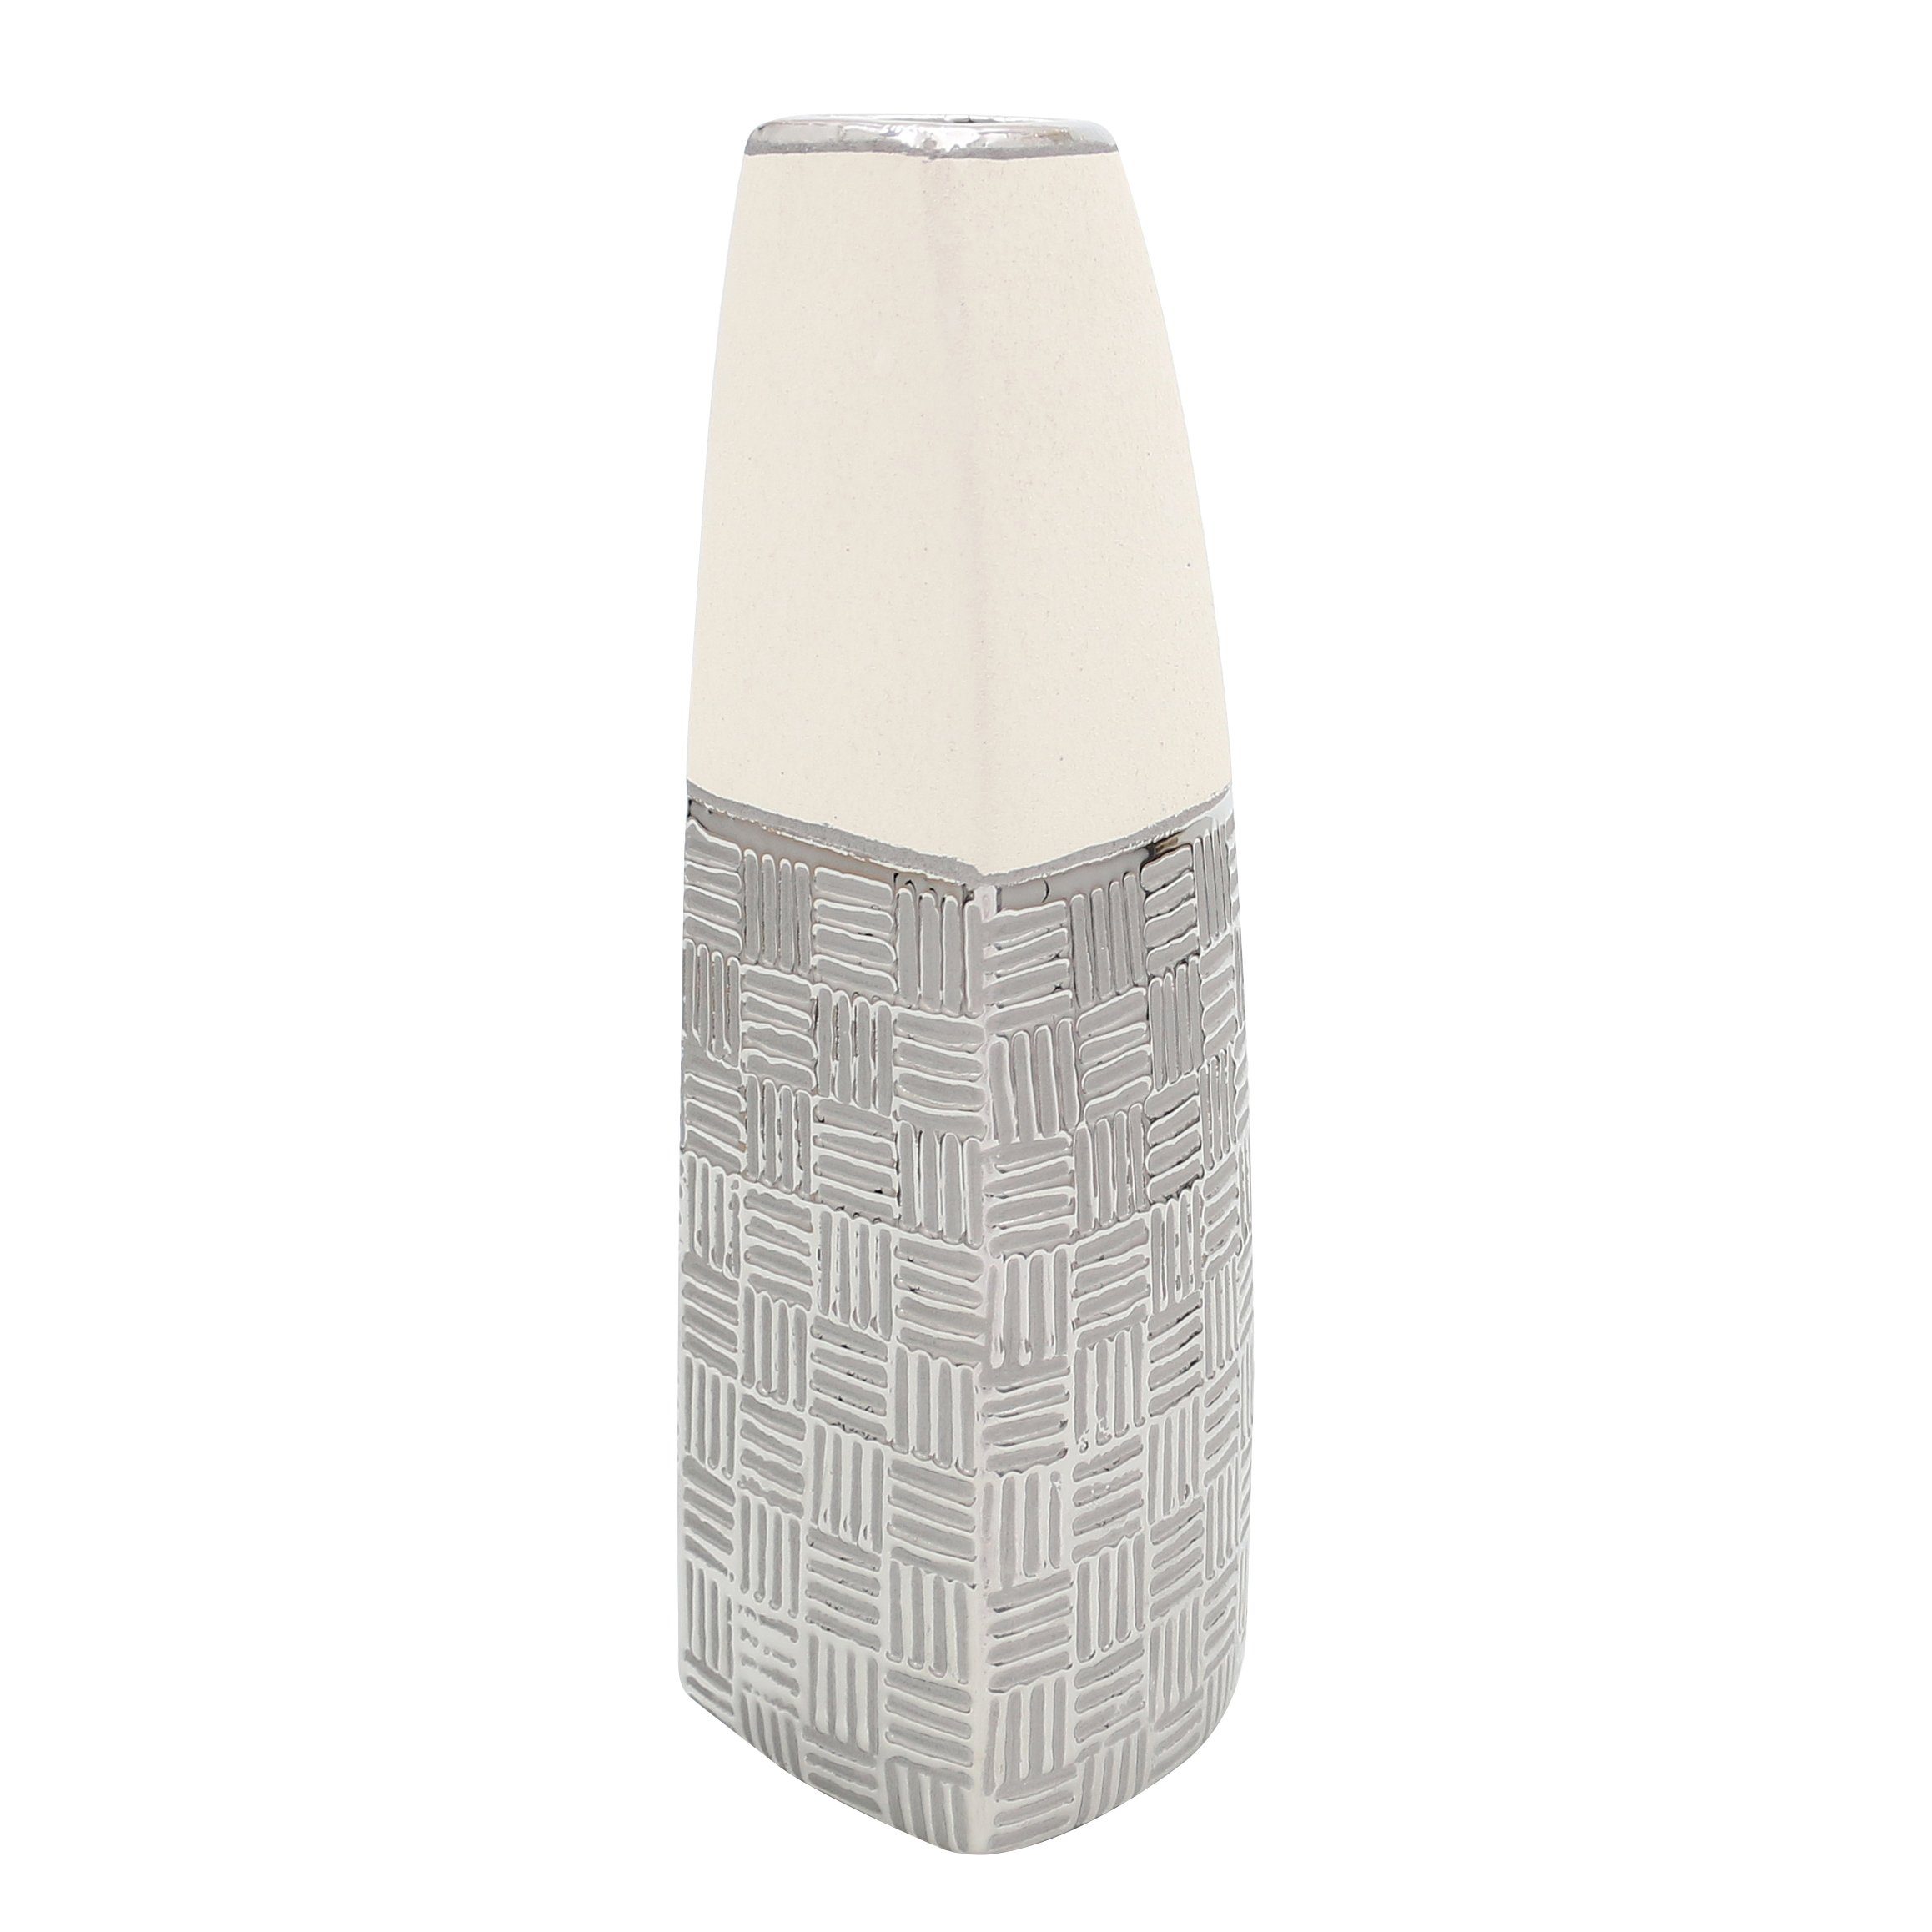 Dekohelden24 Dekovase Edle moderne Deko Designer Keramik Vase Segel in silber-grau weiß (kein, 1 St) | Dekovasen